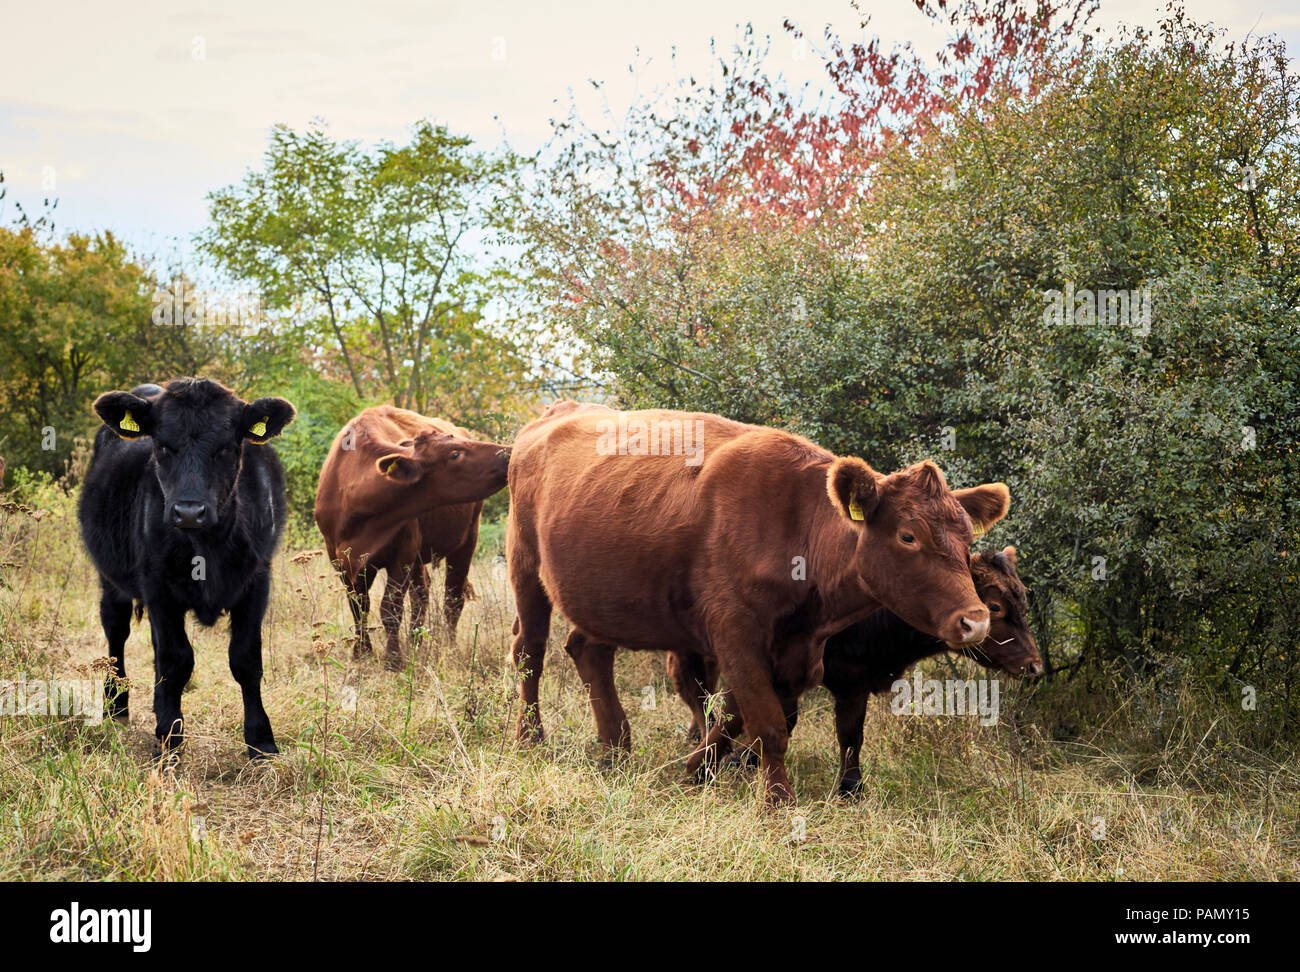 Bovins Angus allemand. Les vaches et les veaux sur un pâturage, à l'automne. Allemagne Banque D'Images